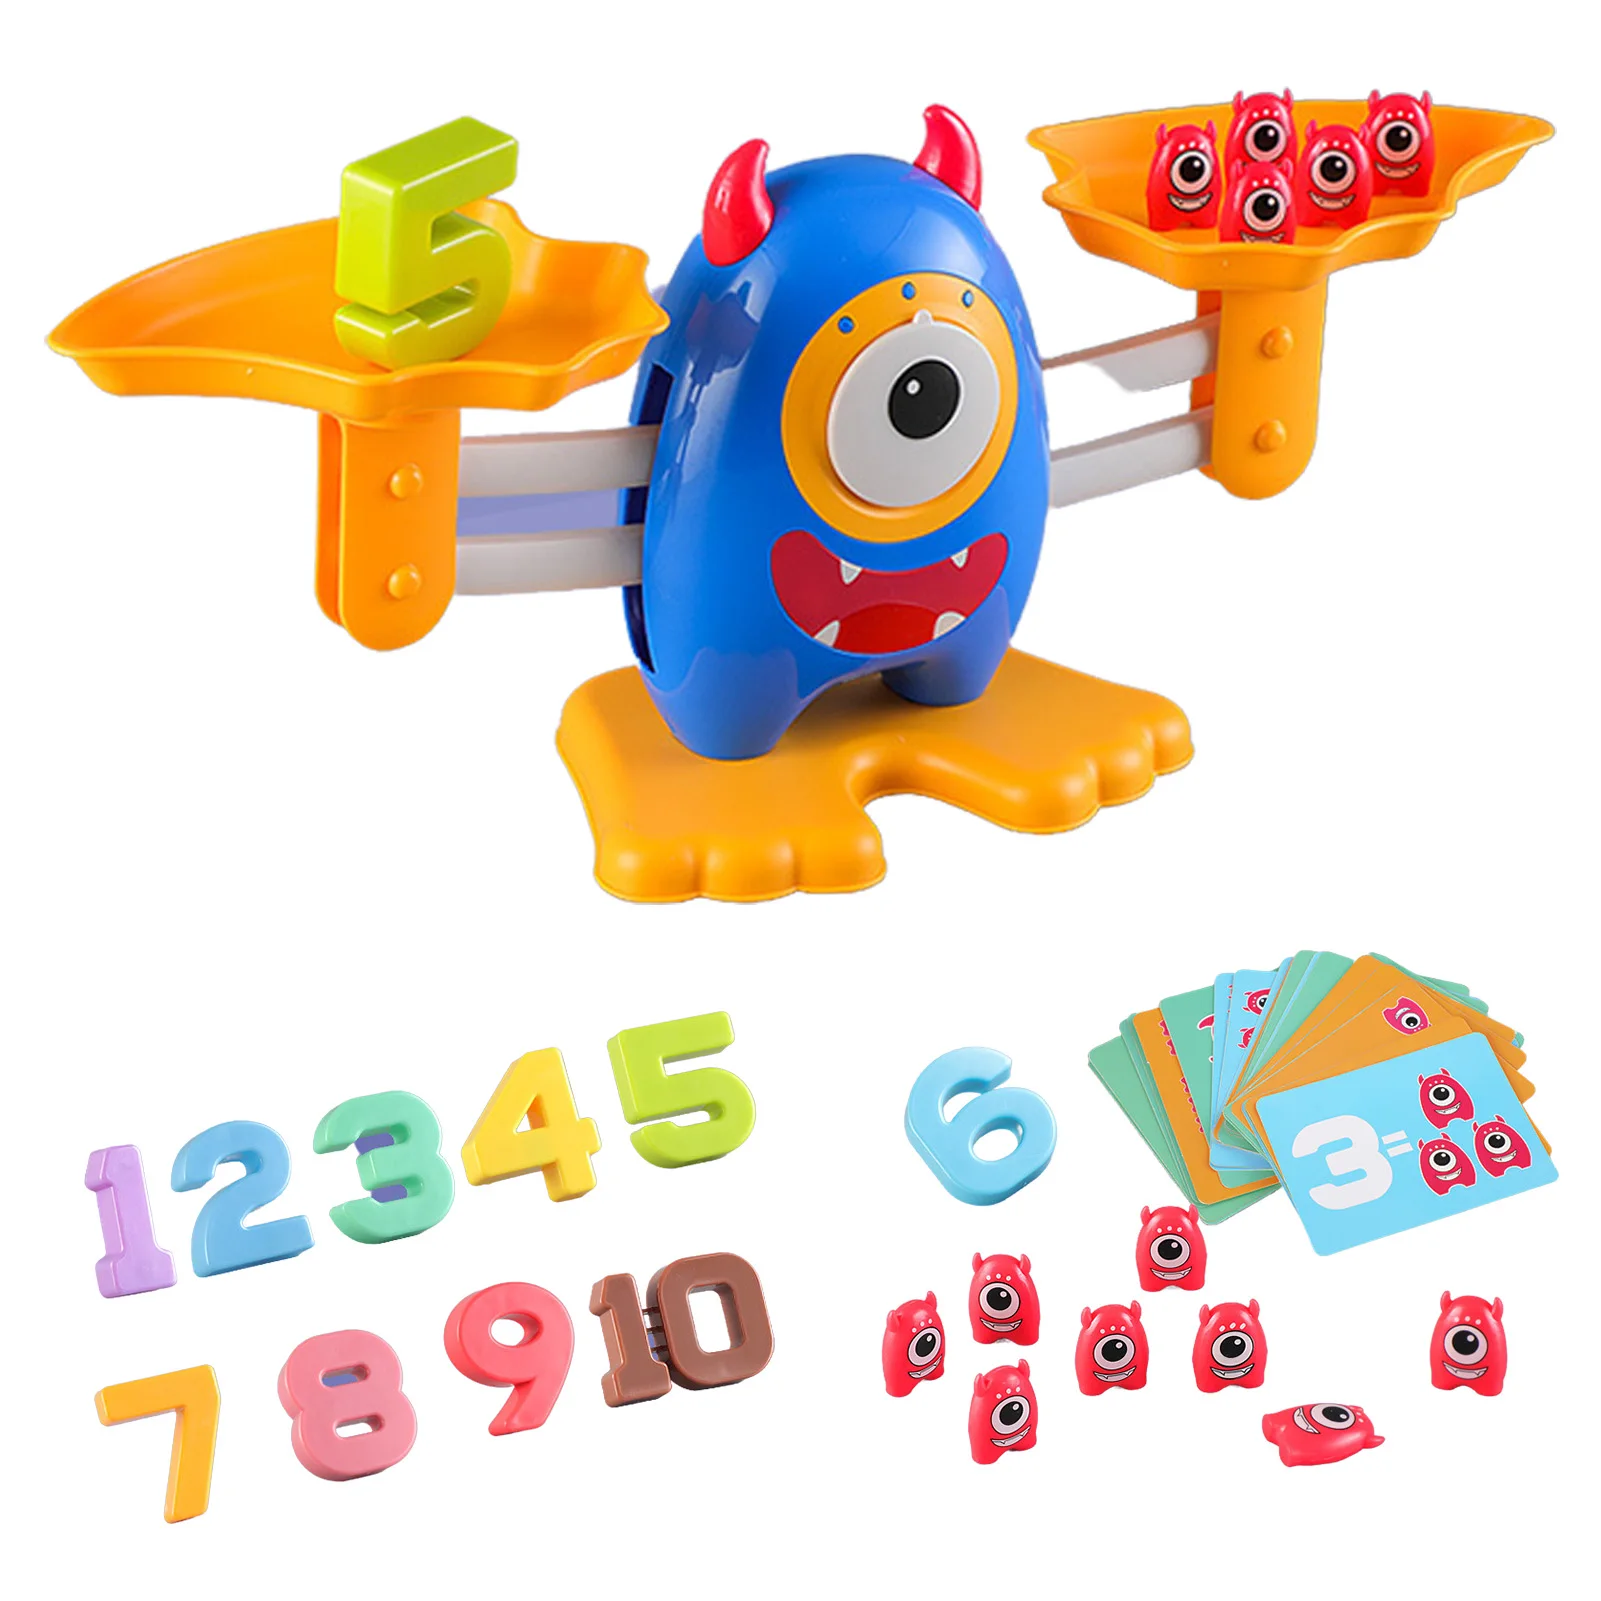 

Математическая игра для детей, игрушки для подсчета баланса, обучающая игрушка-монстр с числами, крутая математическая игра для мальчиков и...